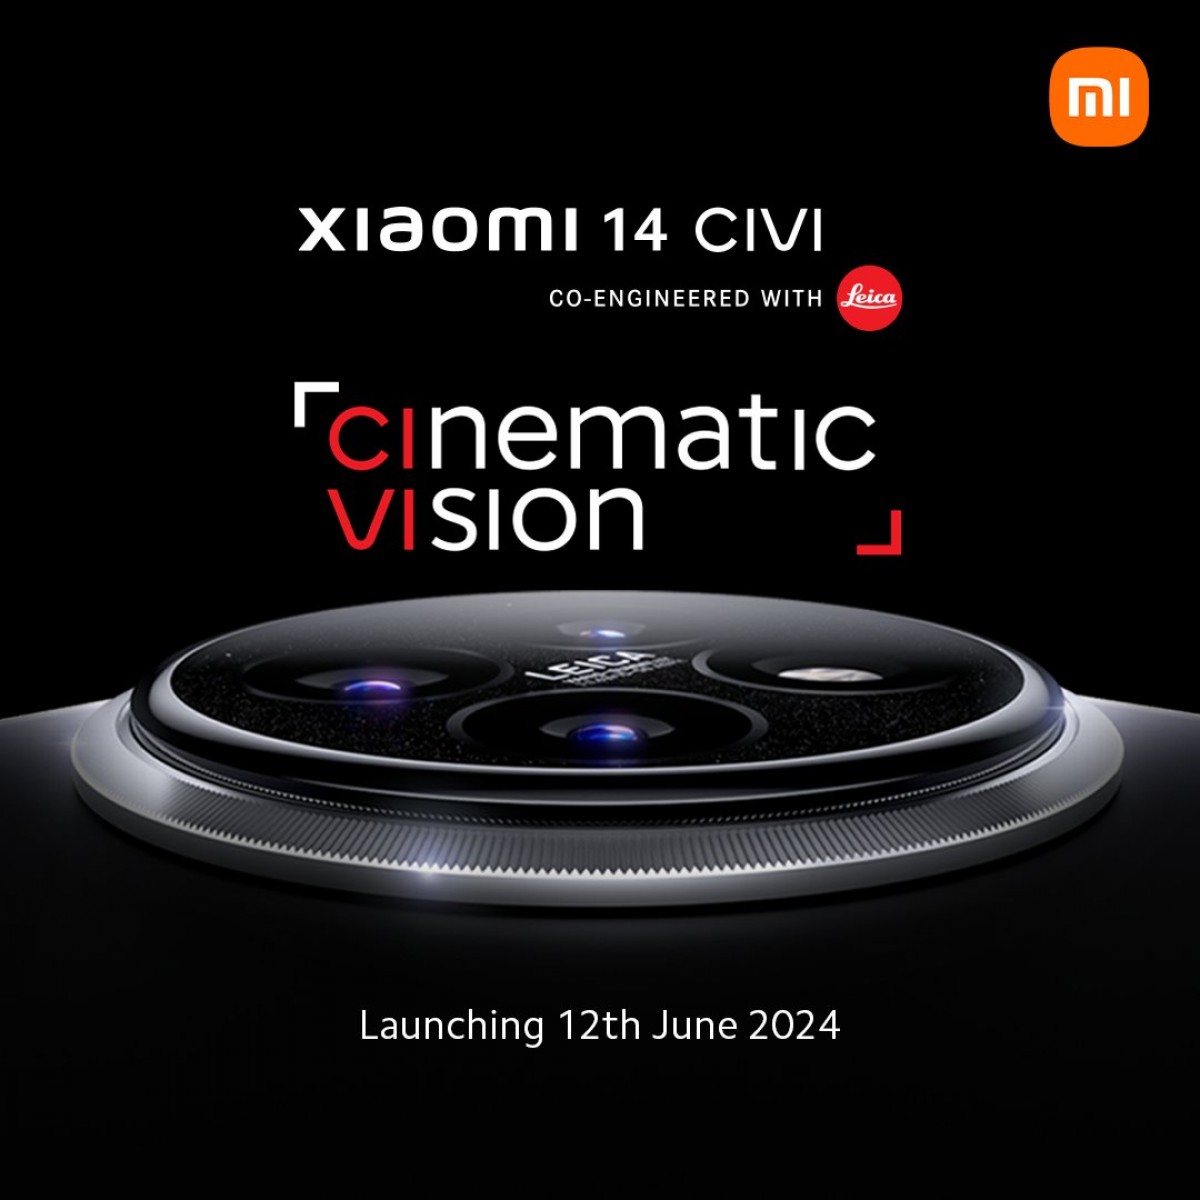 Xiaomi 14 Civi launch date announced